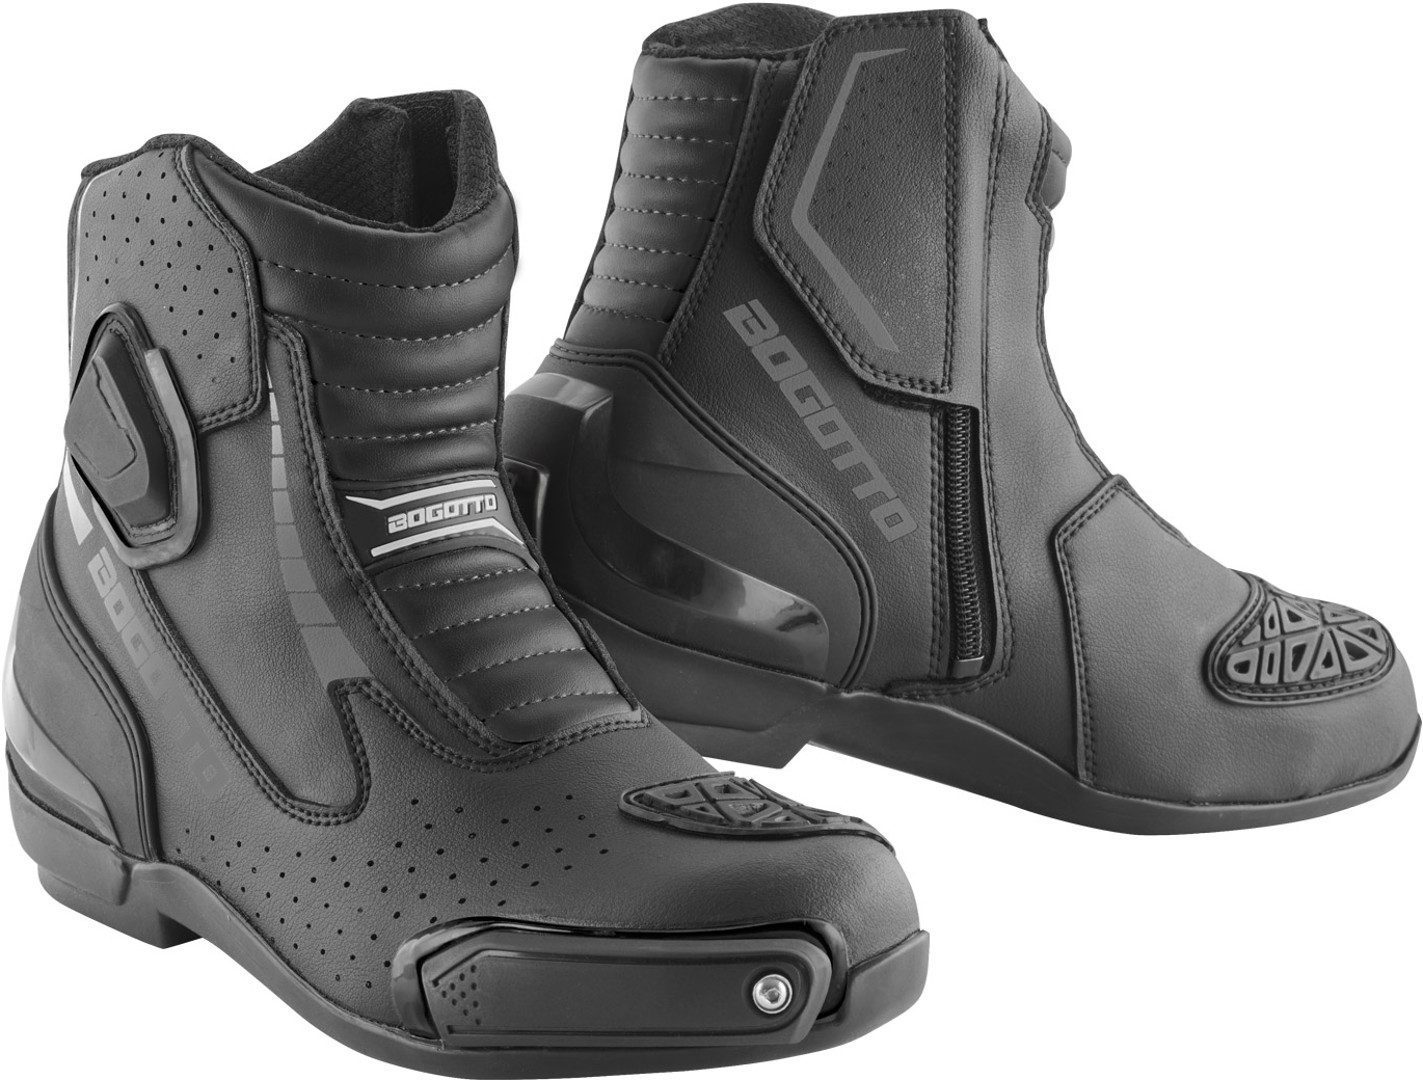 Speed Bikers court bottes de course moto en cuir imperméable noir chaussures de toutes tailles. 